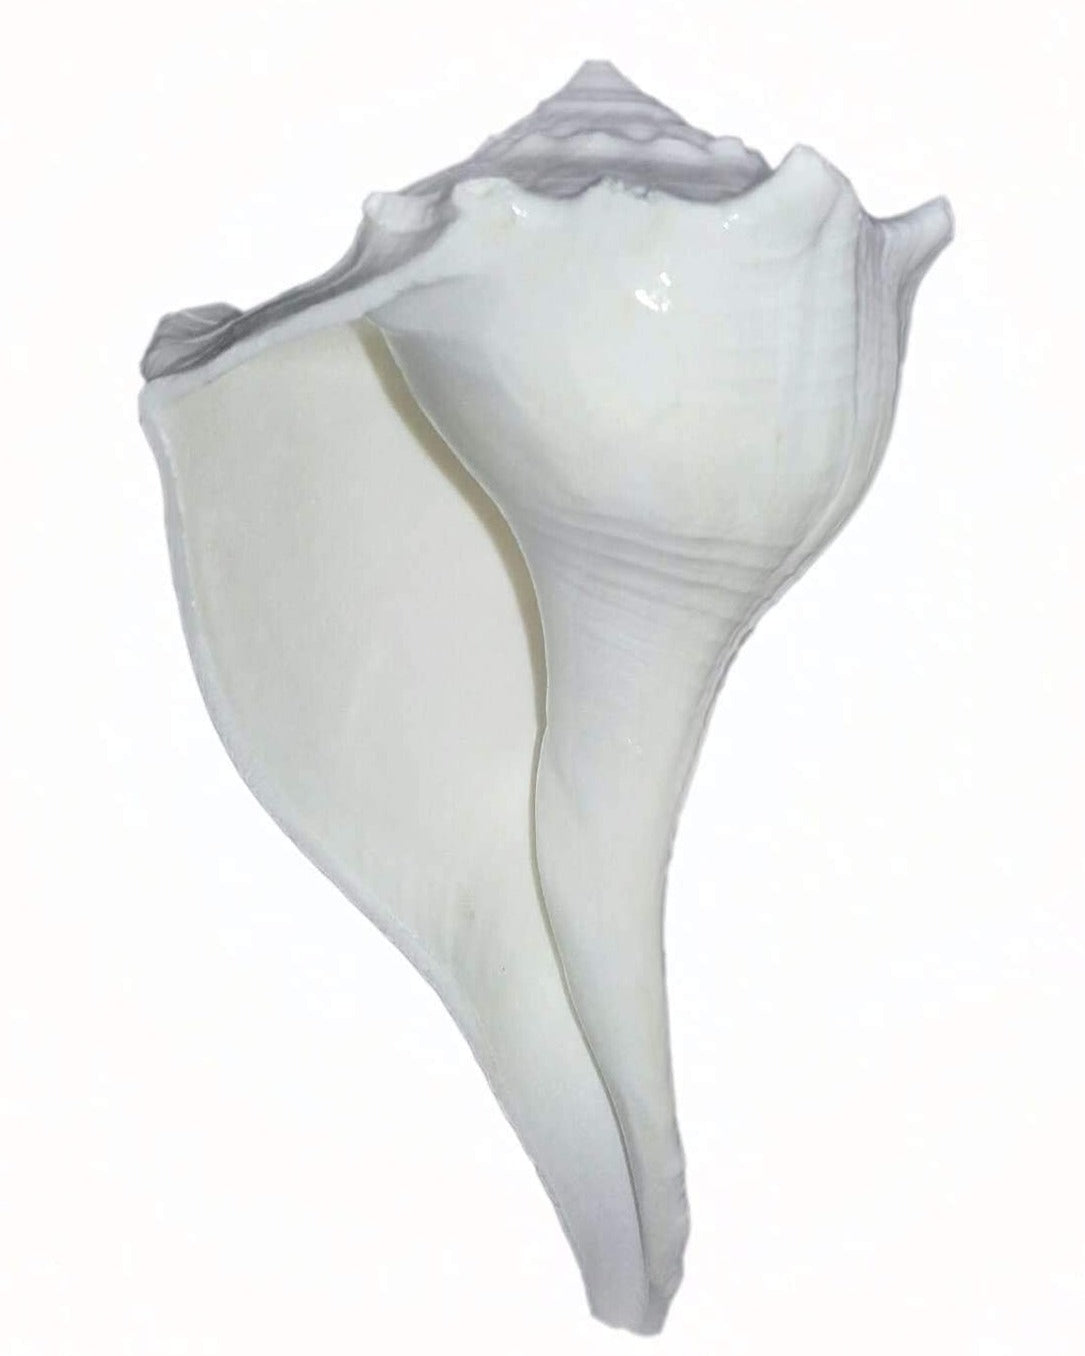 Bengalen Dakshinavarti Shankh Right Hand Conch Shell for Puja Items Pooja Thali Diwali Home Decor Gift ( White )